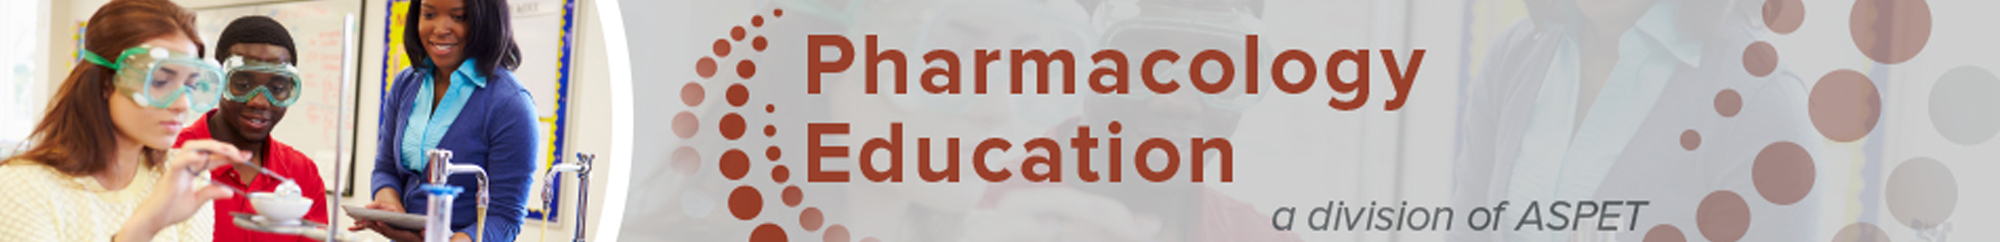 Pharmacology Education